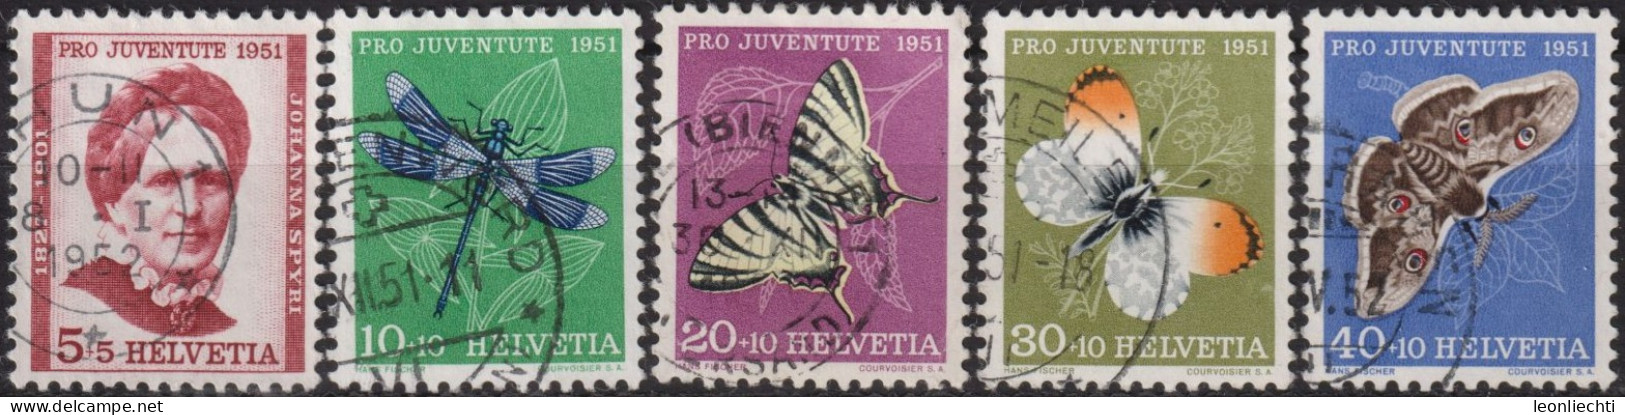 1951 Schweiz Pro Juventute ° Zum:CH J138-J142,Yt:CH 512-516, Mi:CH 561-265, Insekten Und Johanna Spyri - Usati